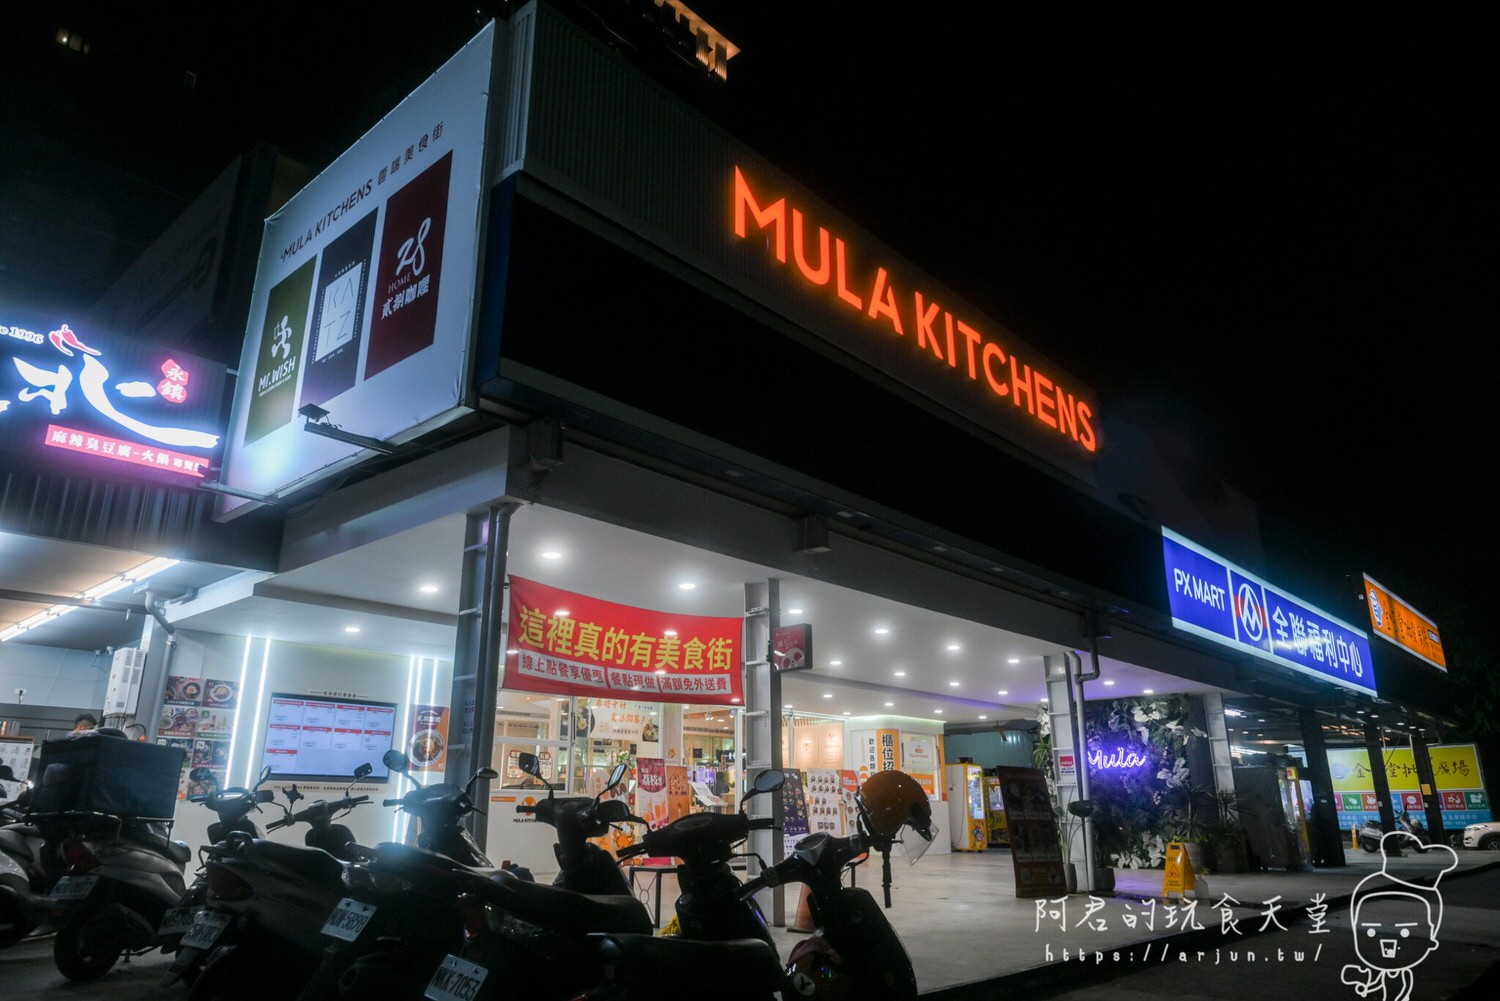 【台中】Mula Kitchens 雲端廚房｜台中隱藏版美食街？居然可以同時吃到超過十種餐飲品牌！